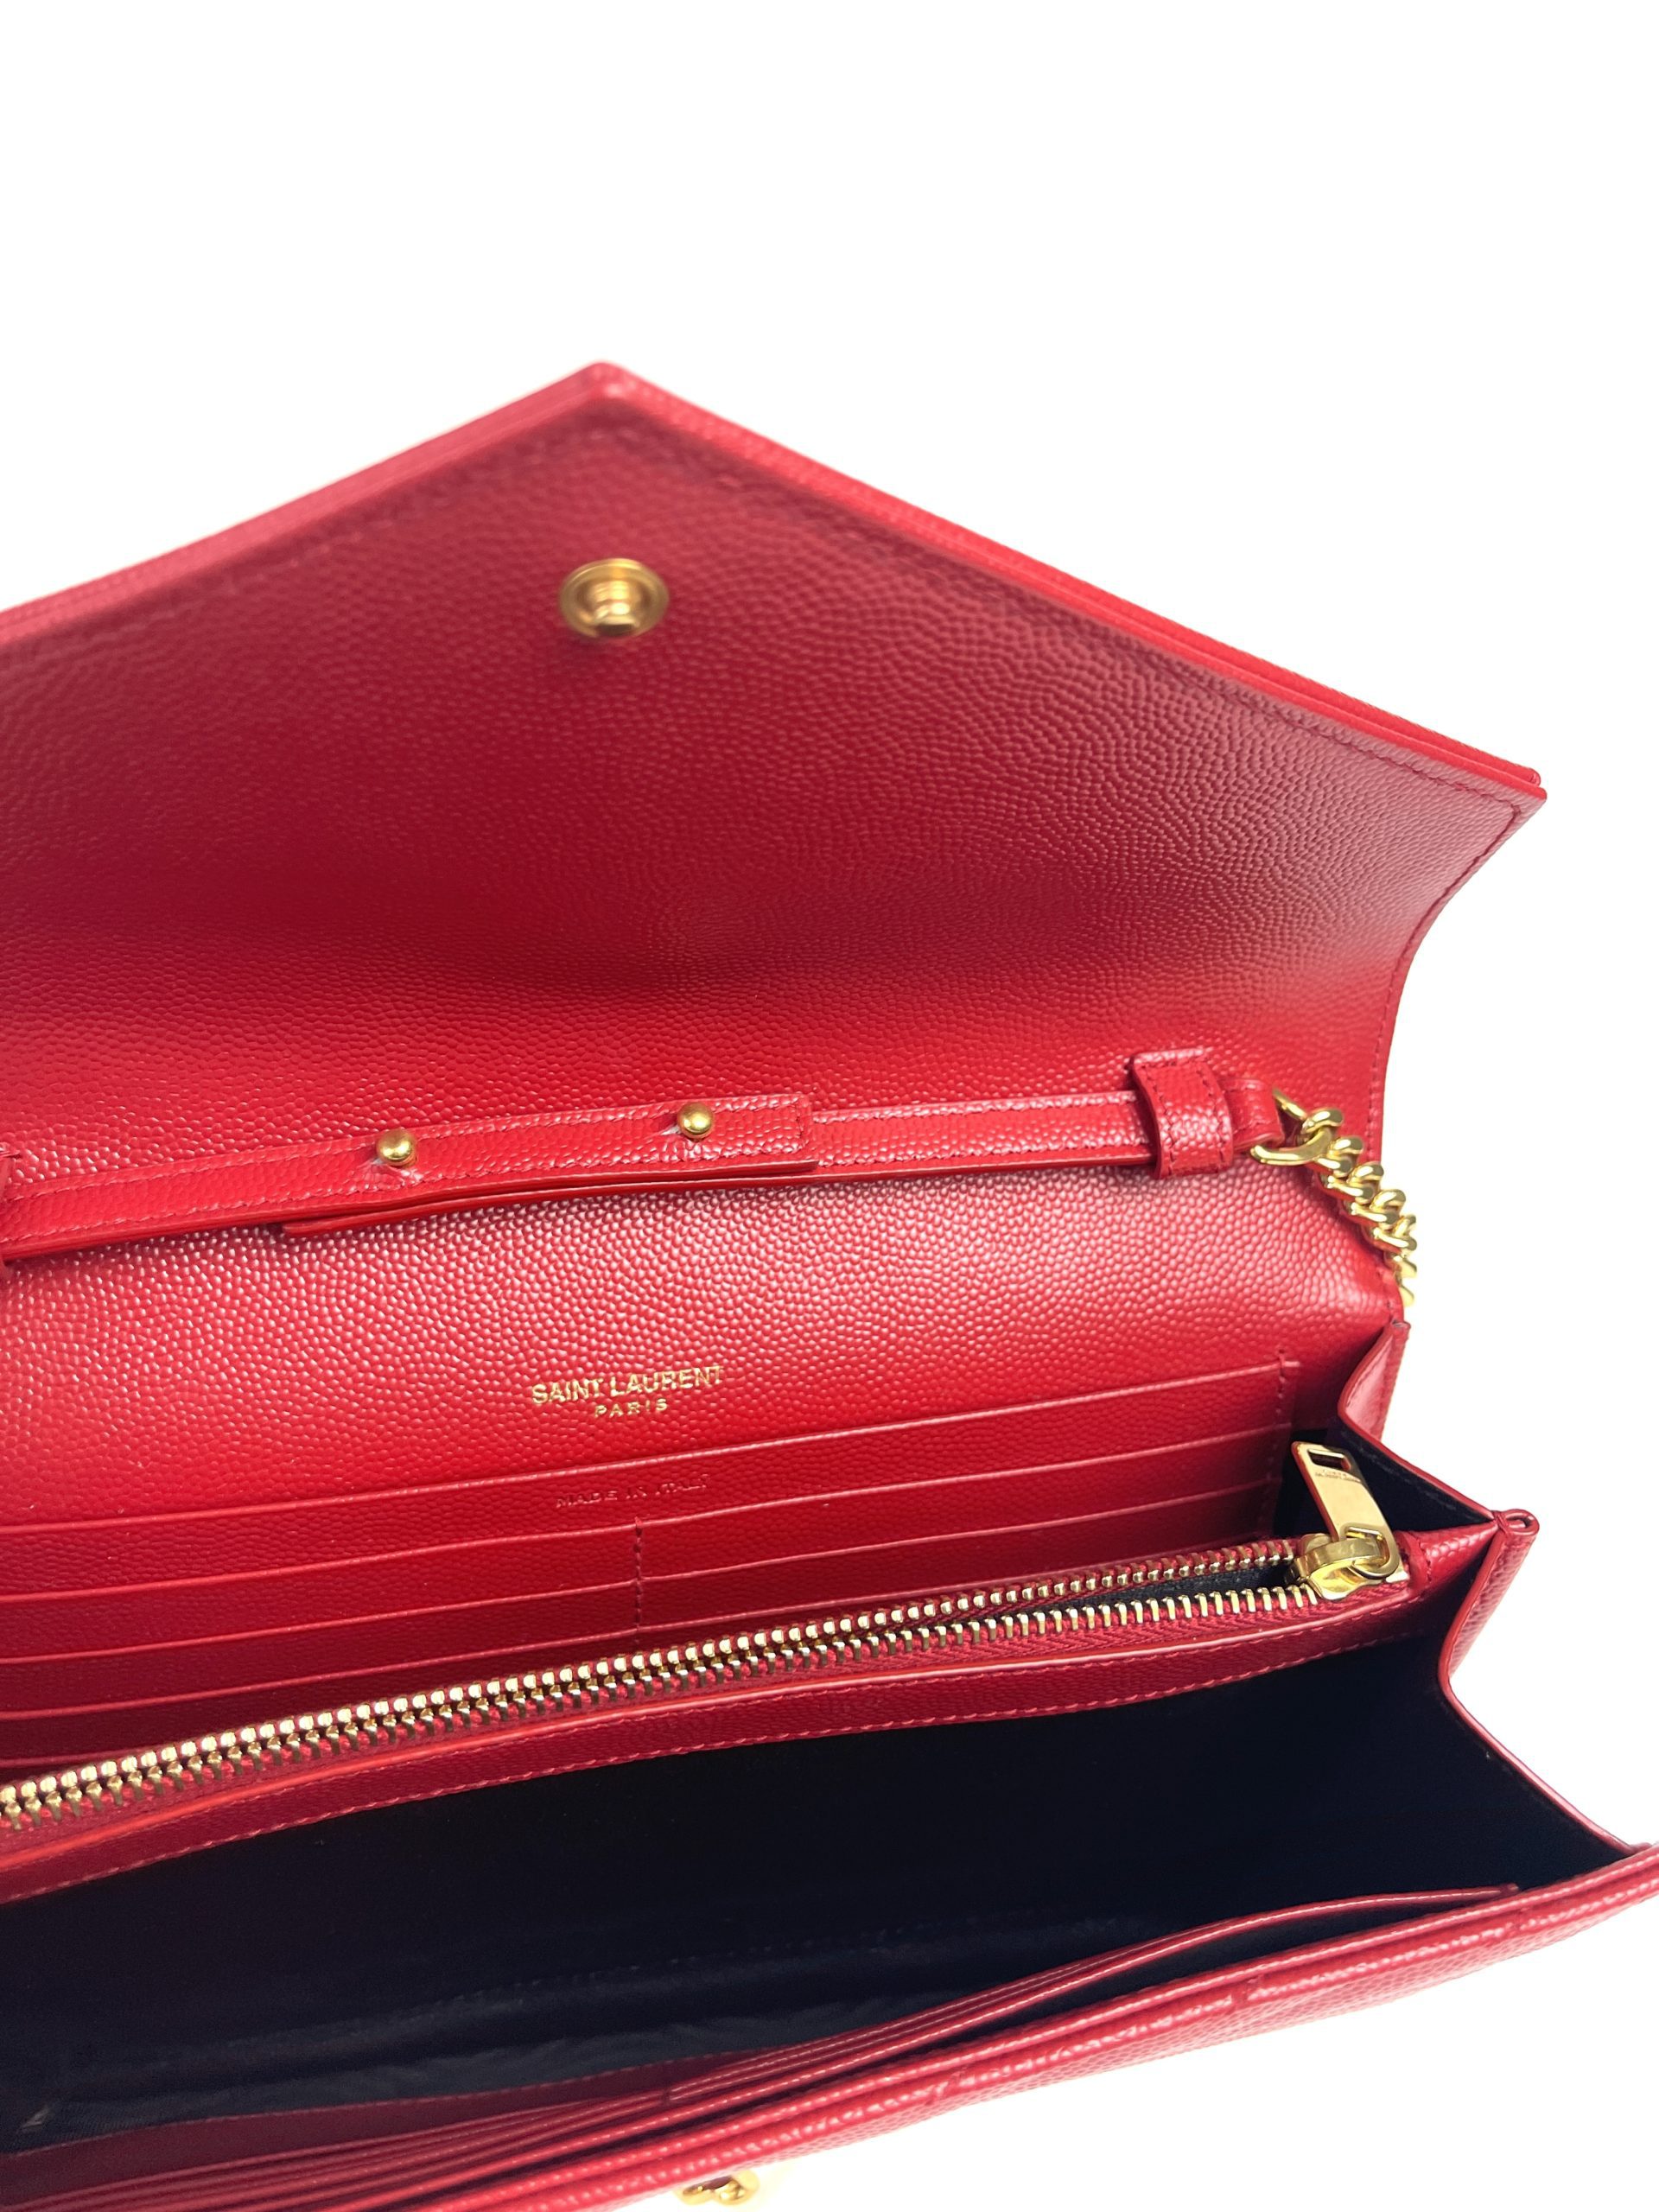 Saint Laurent Monogram Chain Wallet Grain de Poudre Leather Red Bag 37 –  Queen Bee of Beverly Hills